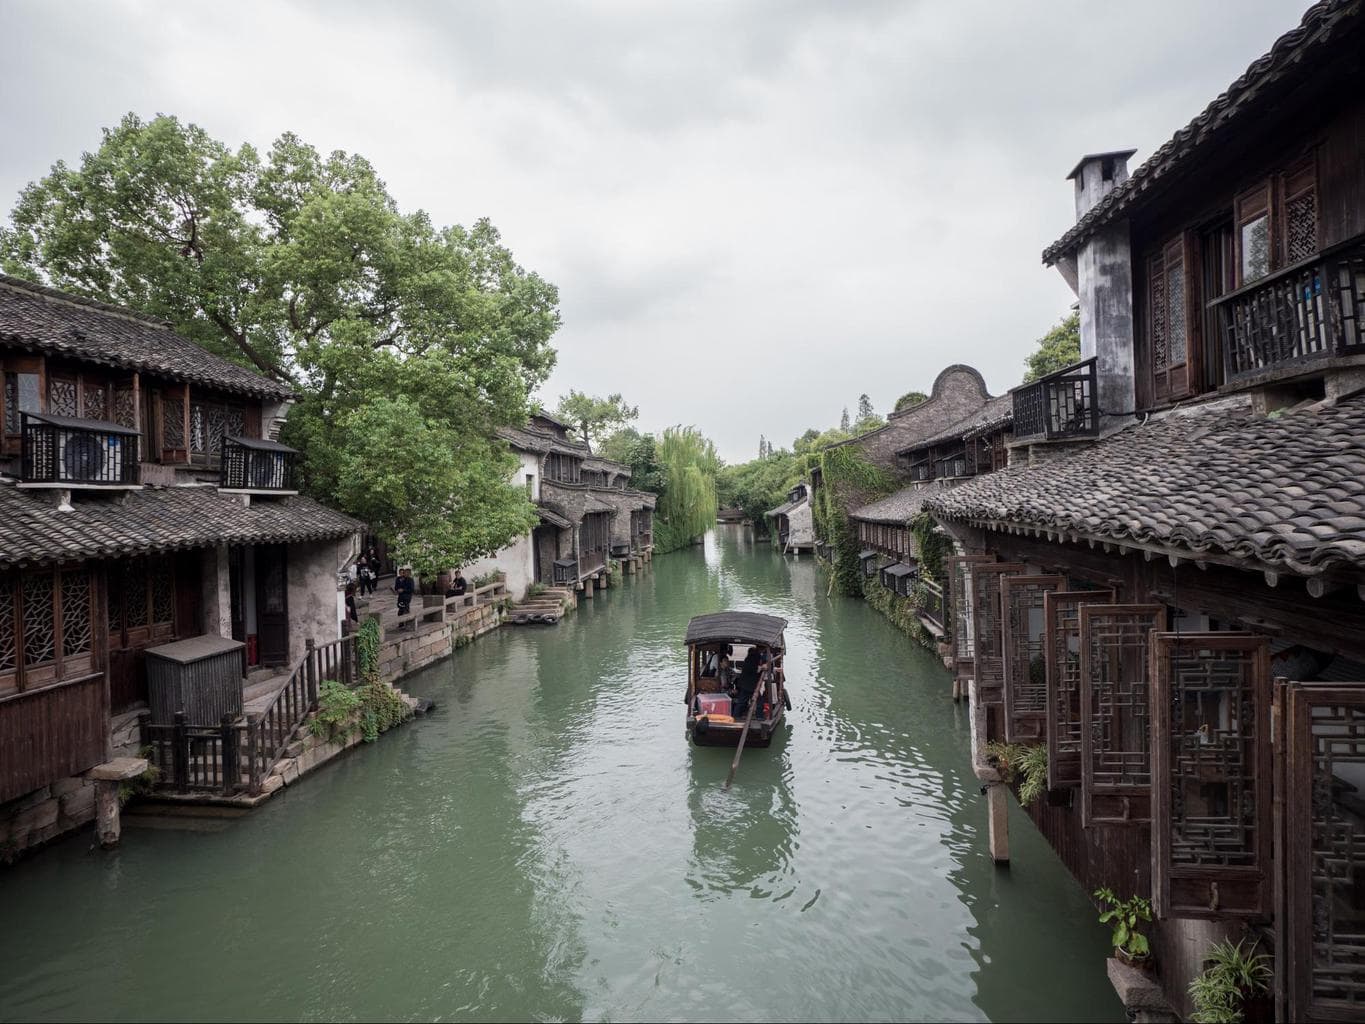 Water town near Shanghai